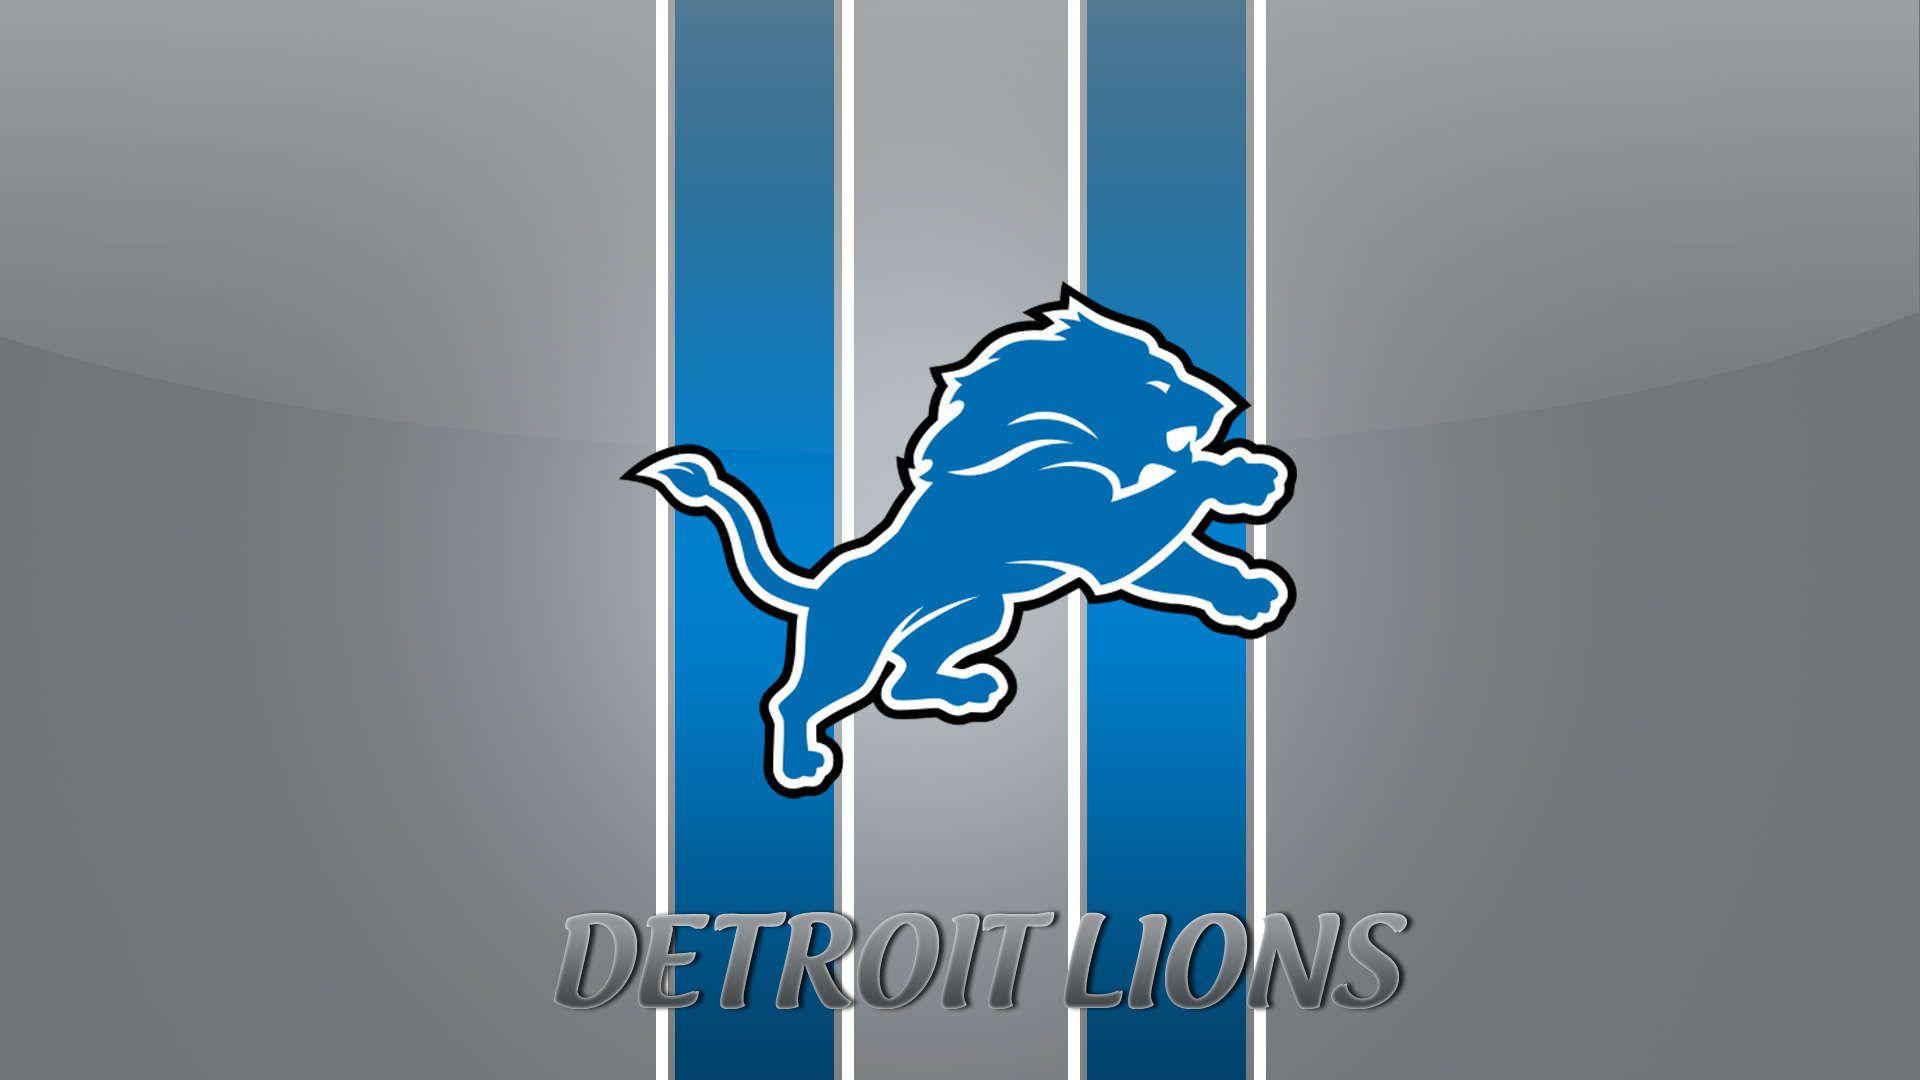 Detroit Lions Image, HD Wallpaper